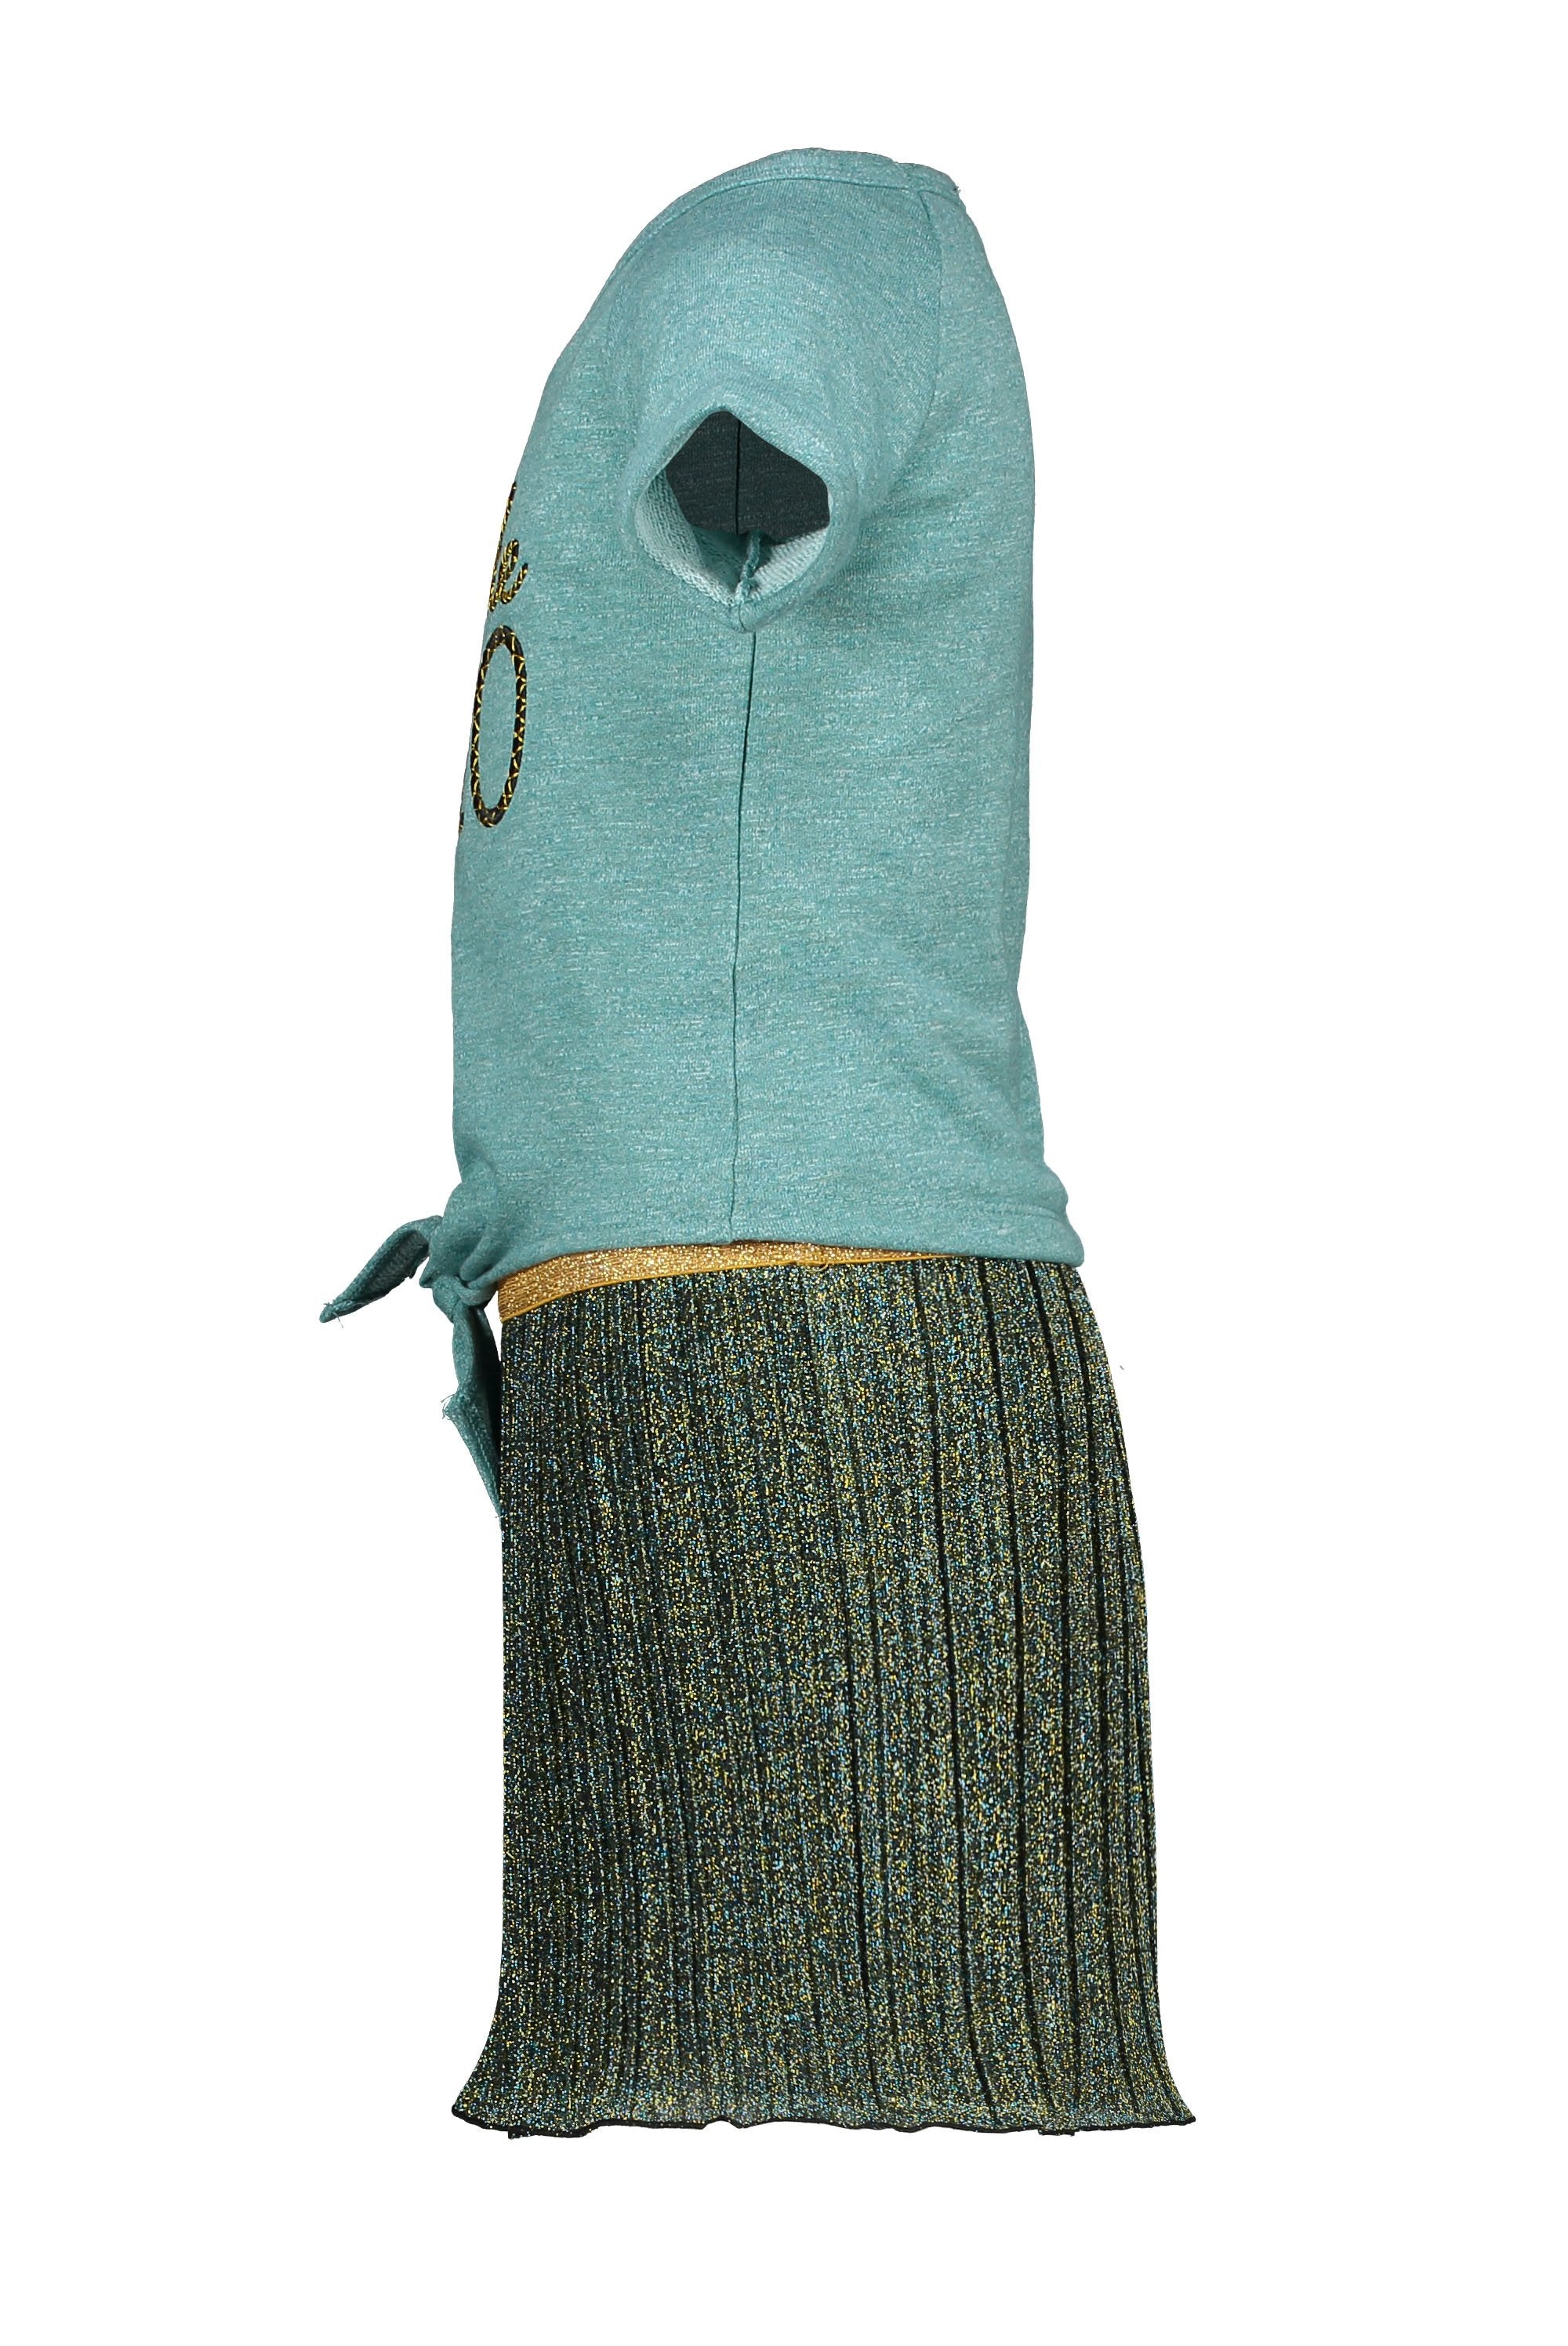 Meisjes Flo girls 2pc lurex plisse dress with sweat melee top van Flo in de kleur Ocean in maat 140.